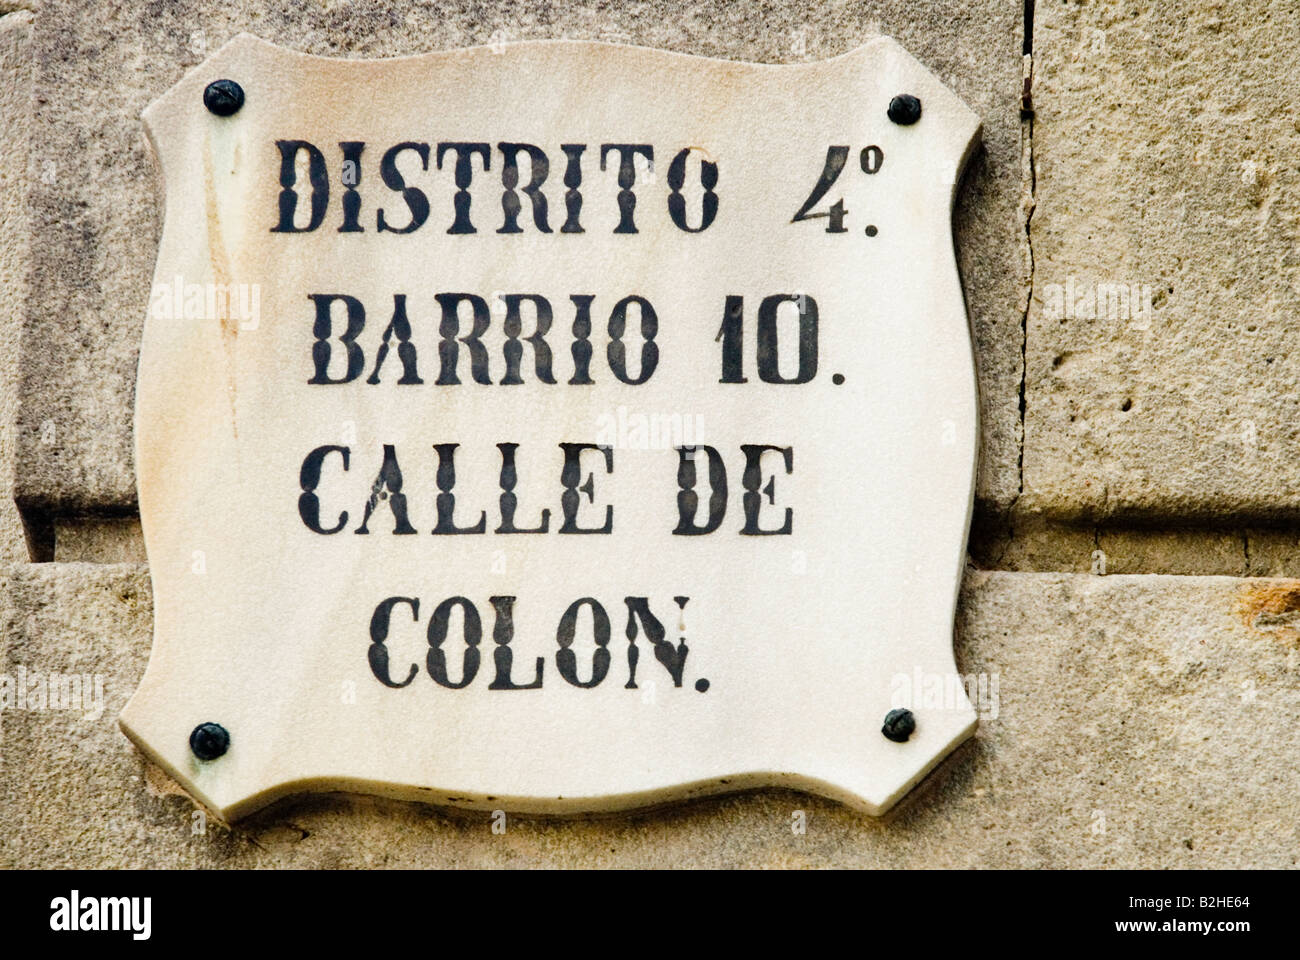 districto barrio 10 calle de colon sign barcelona Stock Photo